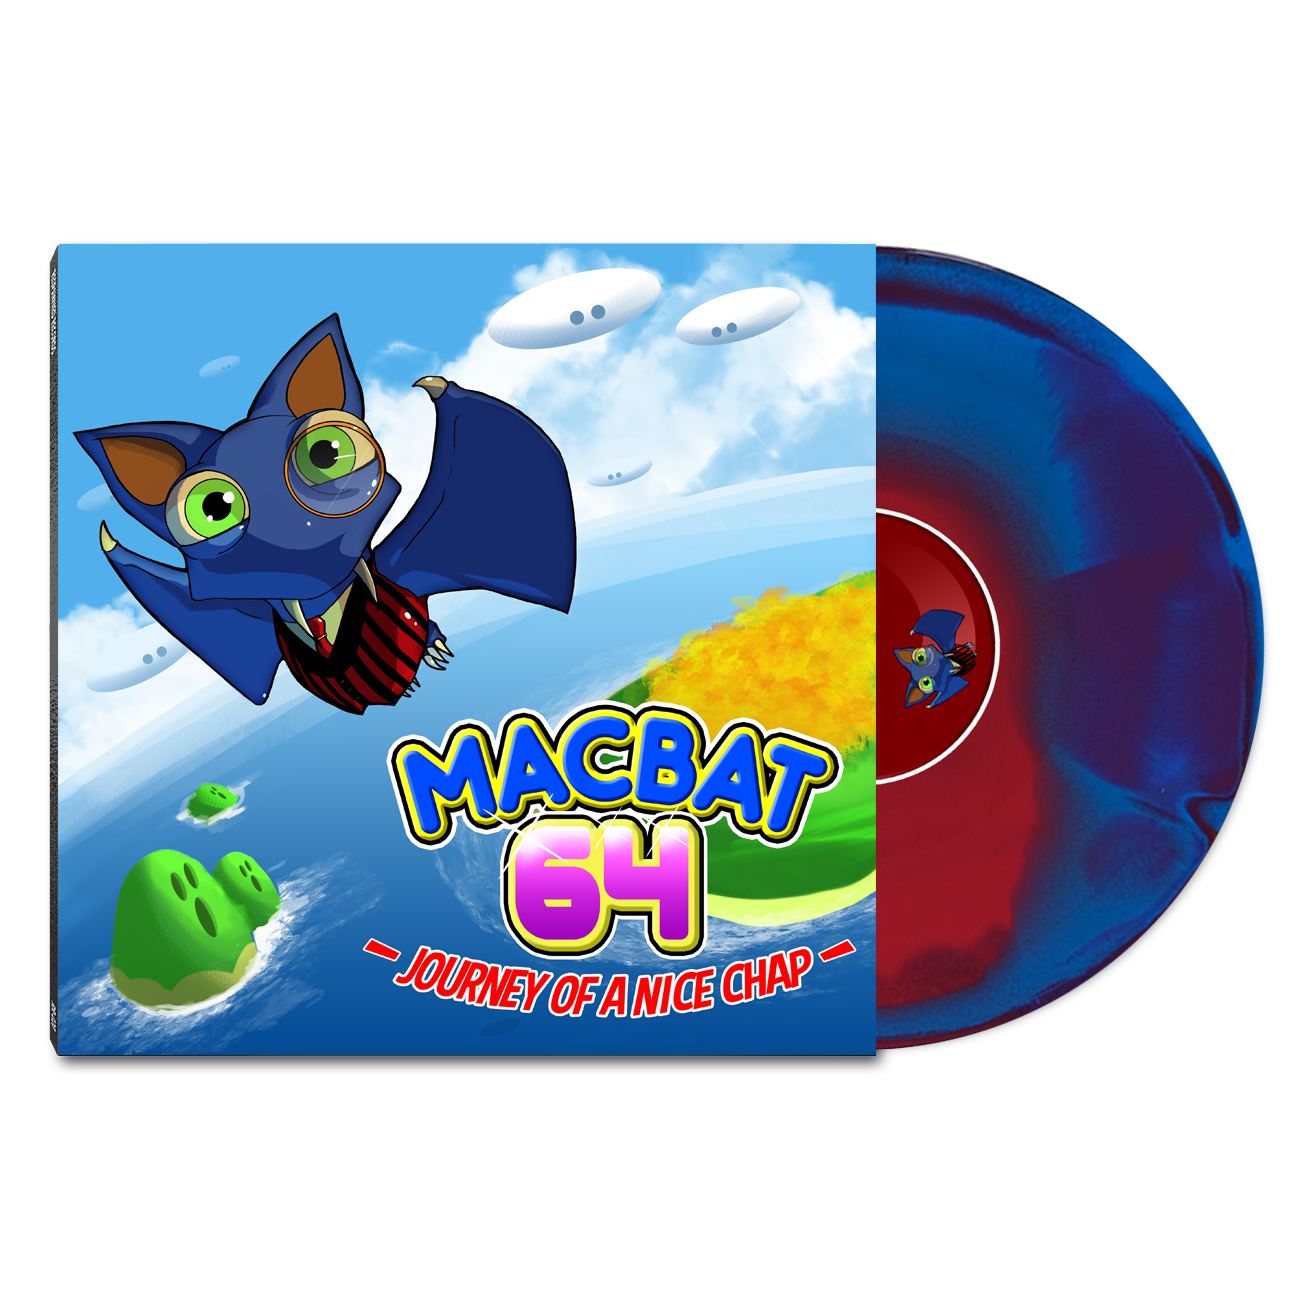 Macbat 64 Official Vinyl Soundtrack